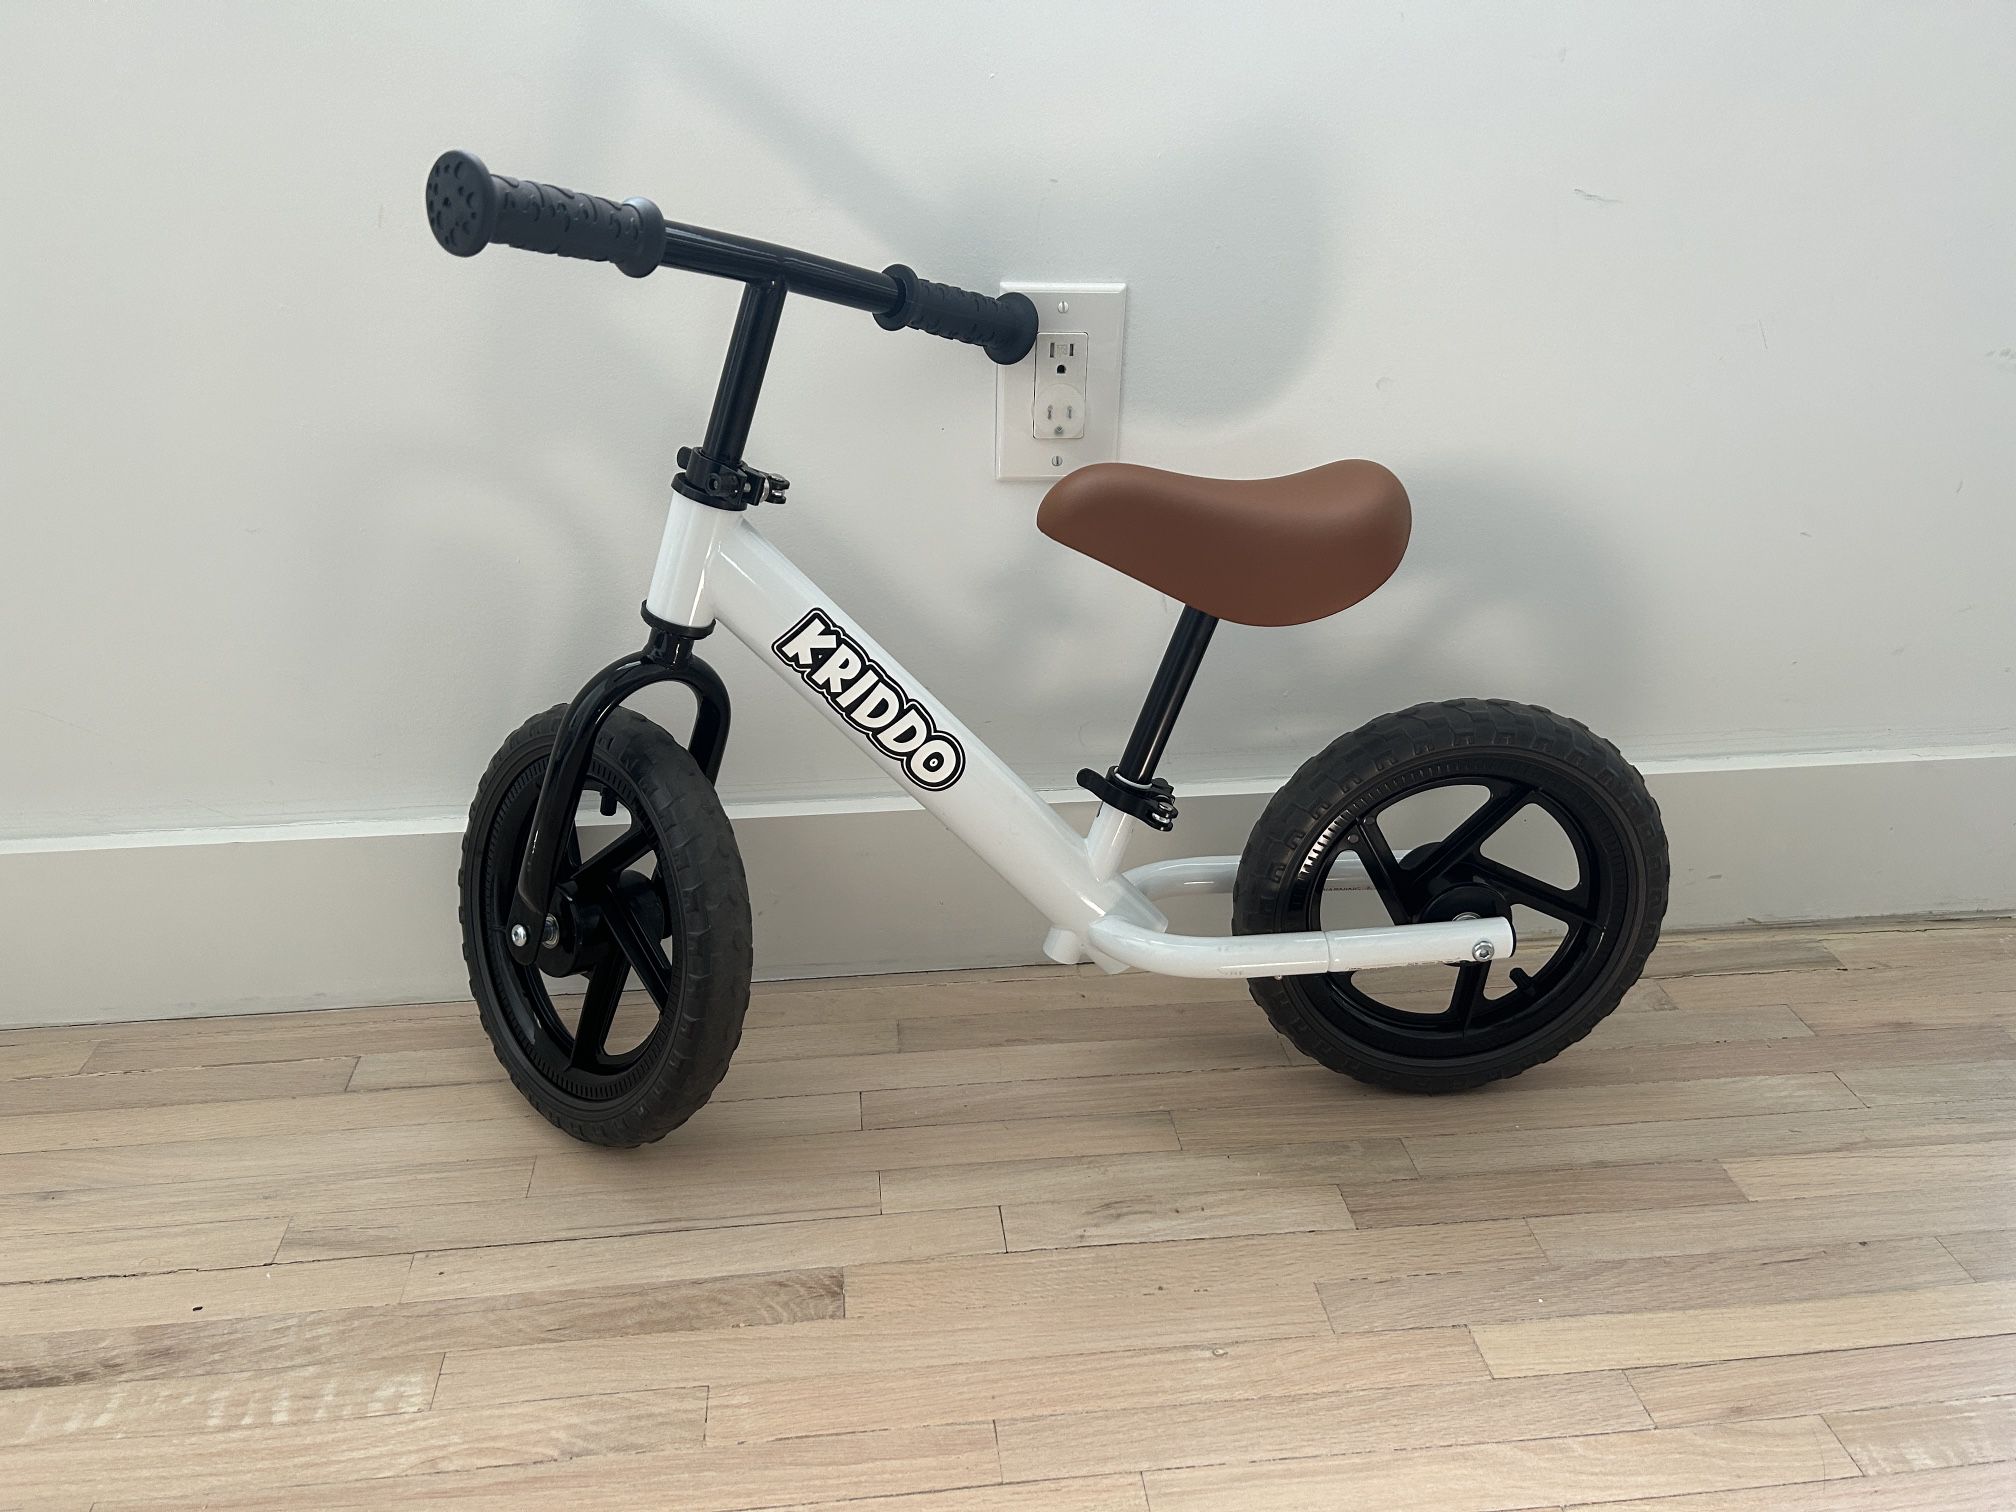 Kriddo Toddler Balance Bike